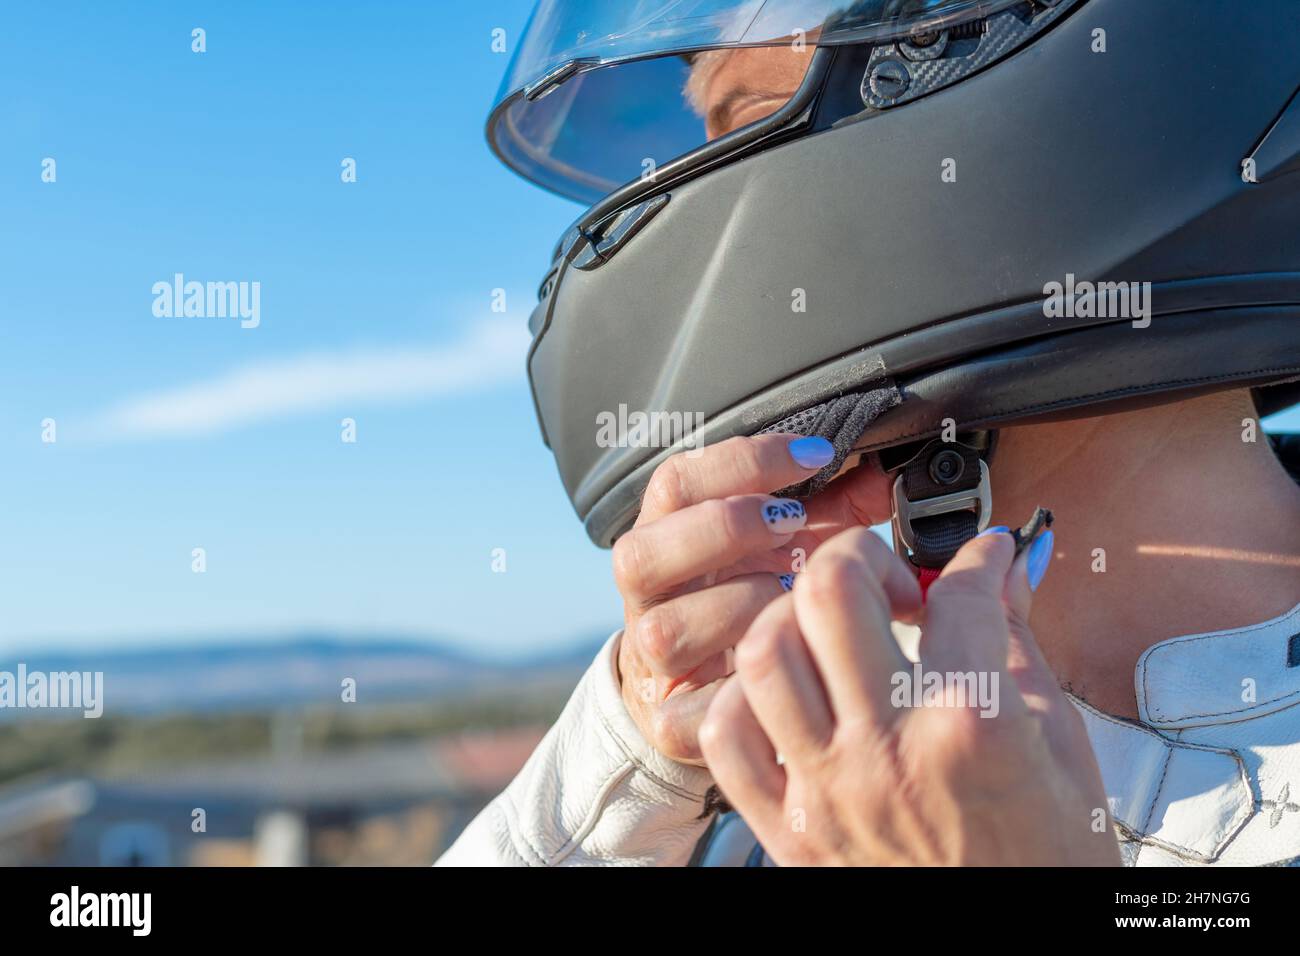 jeune femme motard qui attache son casque de sécurité à la moto. concept de sécurité et de protection sur la route Banque D'Images